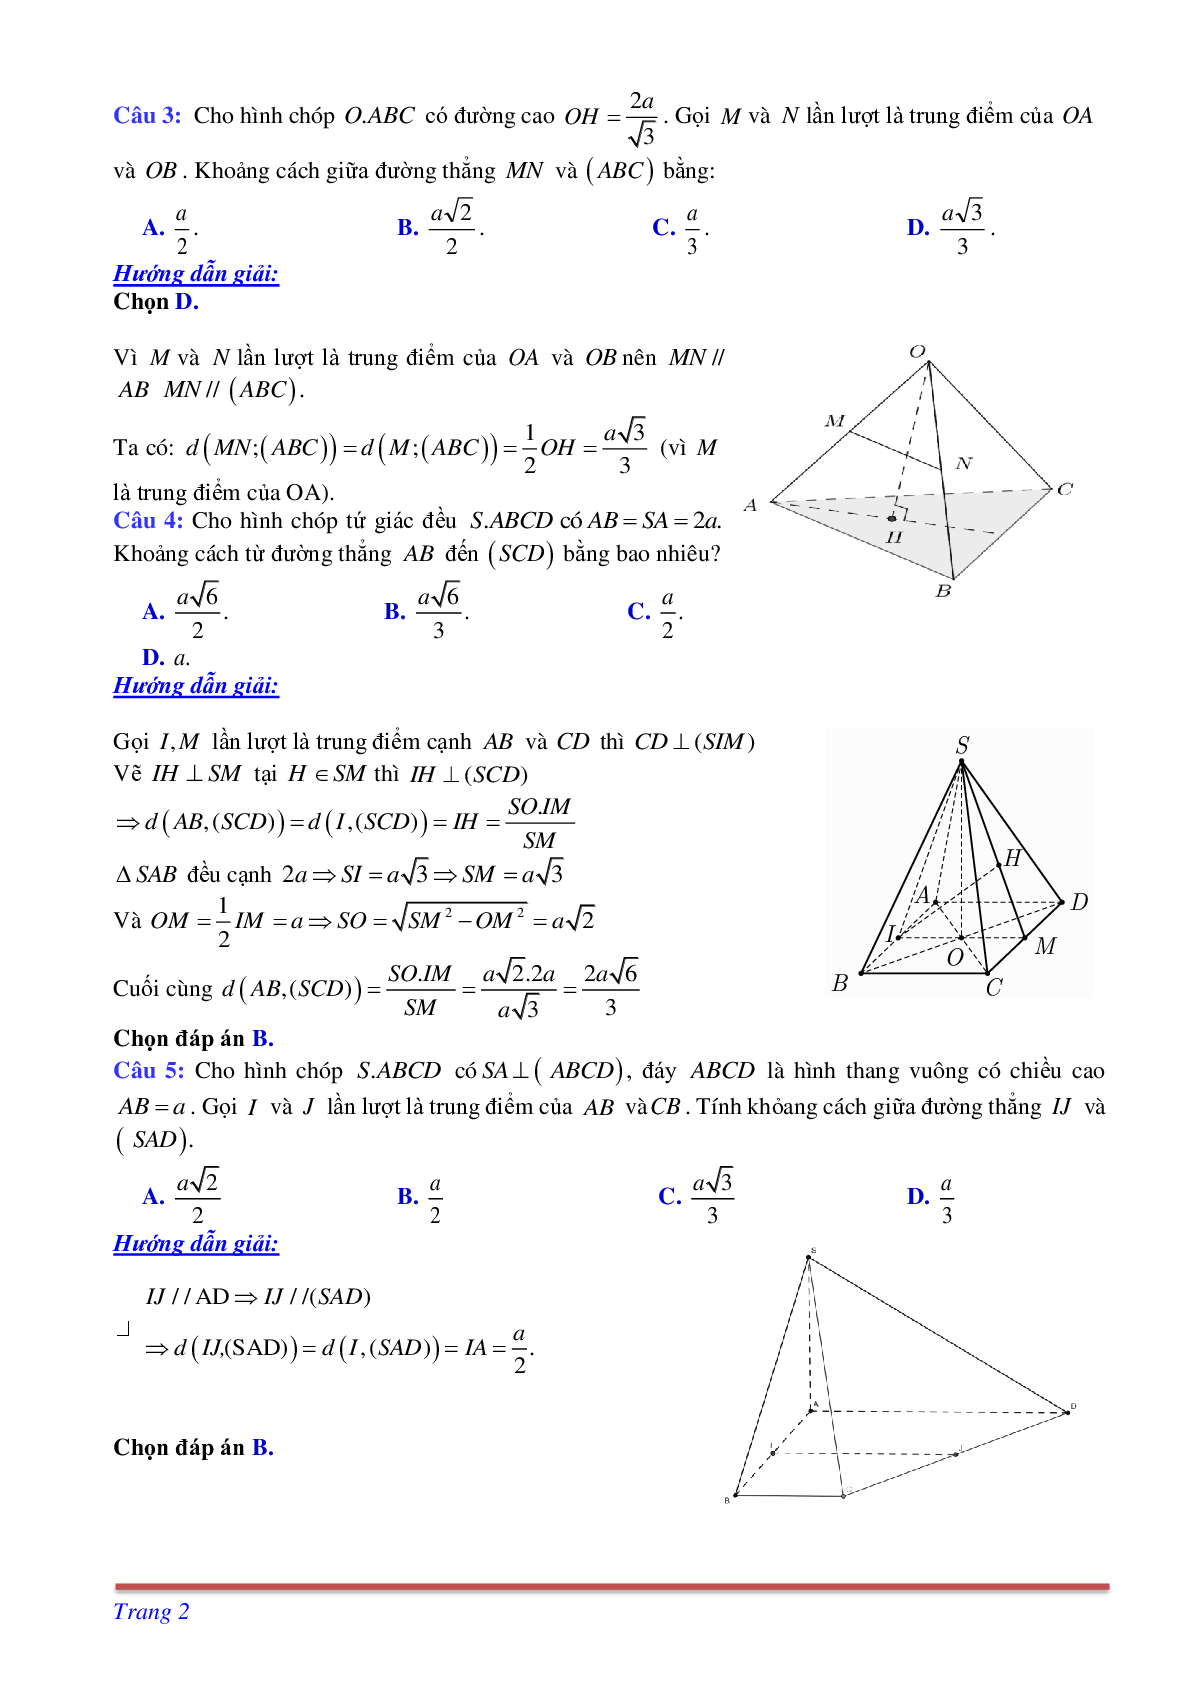 Phương pháp giải và bài tập về Cách tính khoảng cách giữa đường thẳng và mặt phẳng song song có đáp án (trang 2)